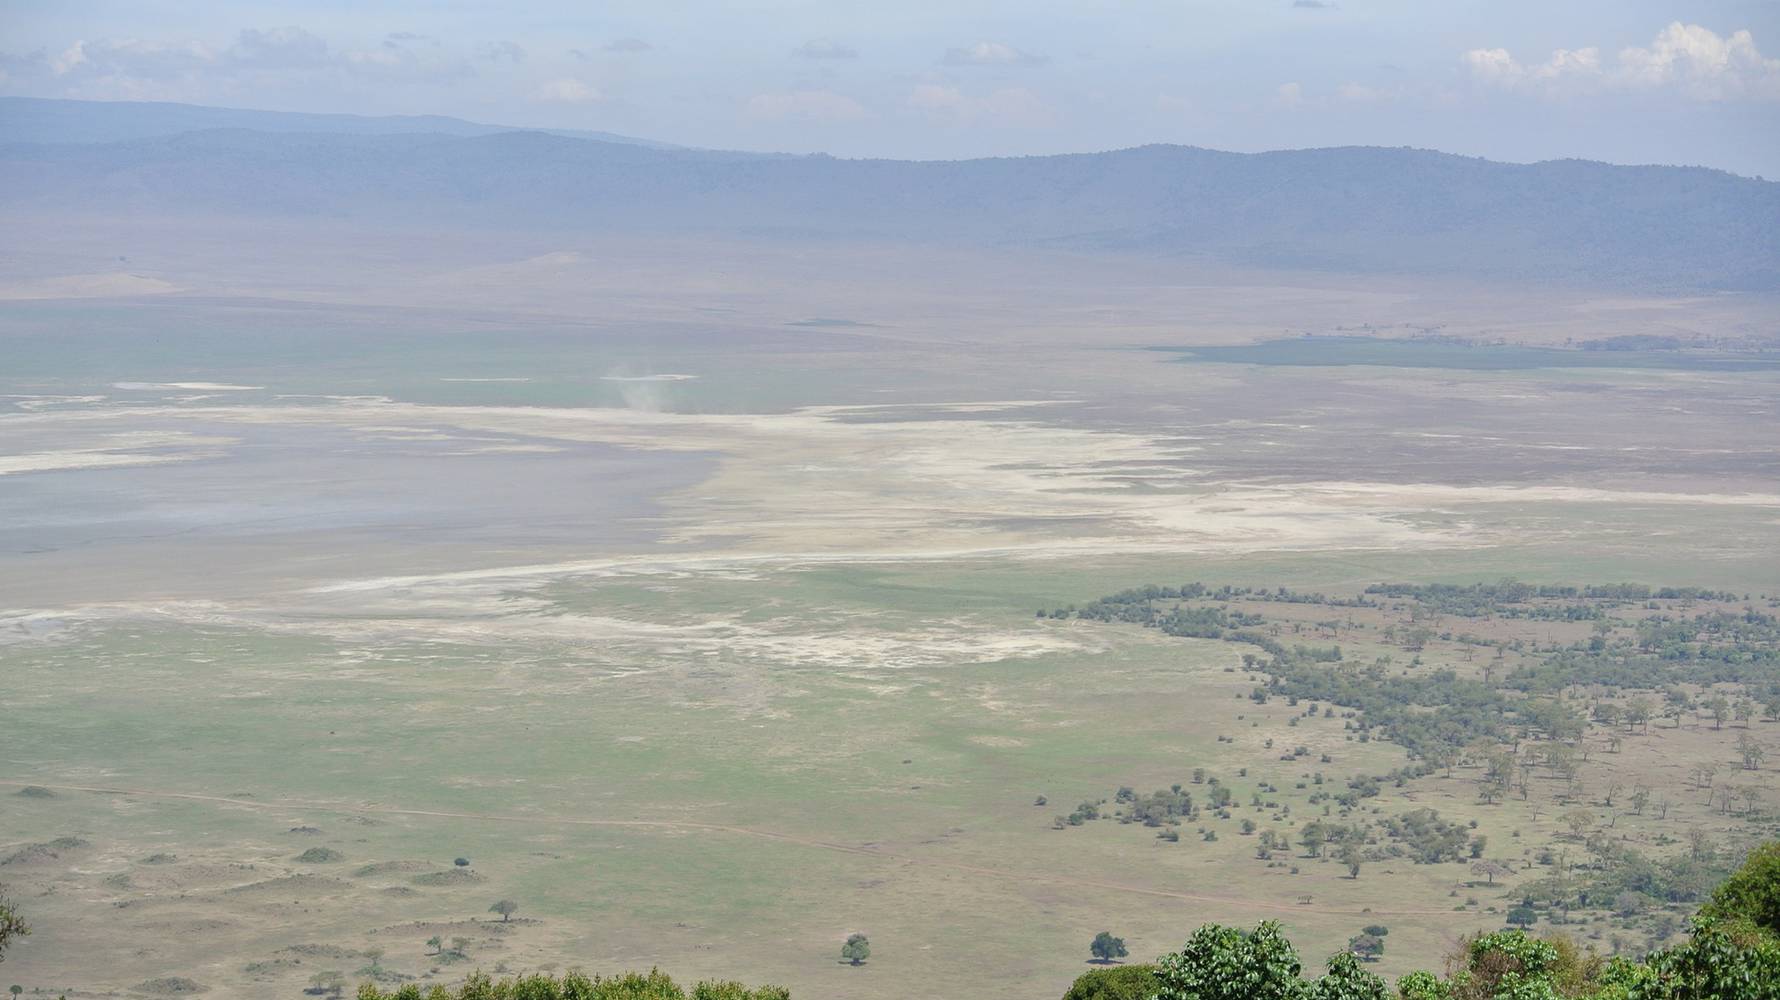 17/11/2017 - Ngorongoro Conservation Area